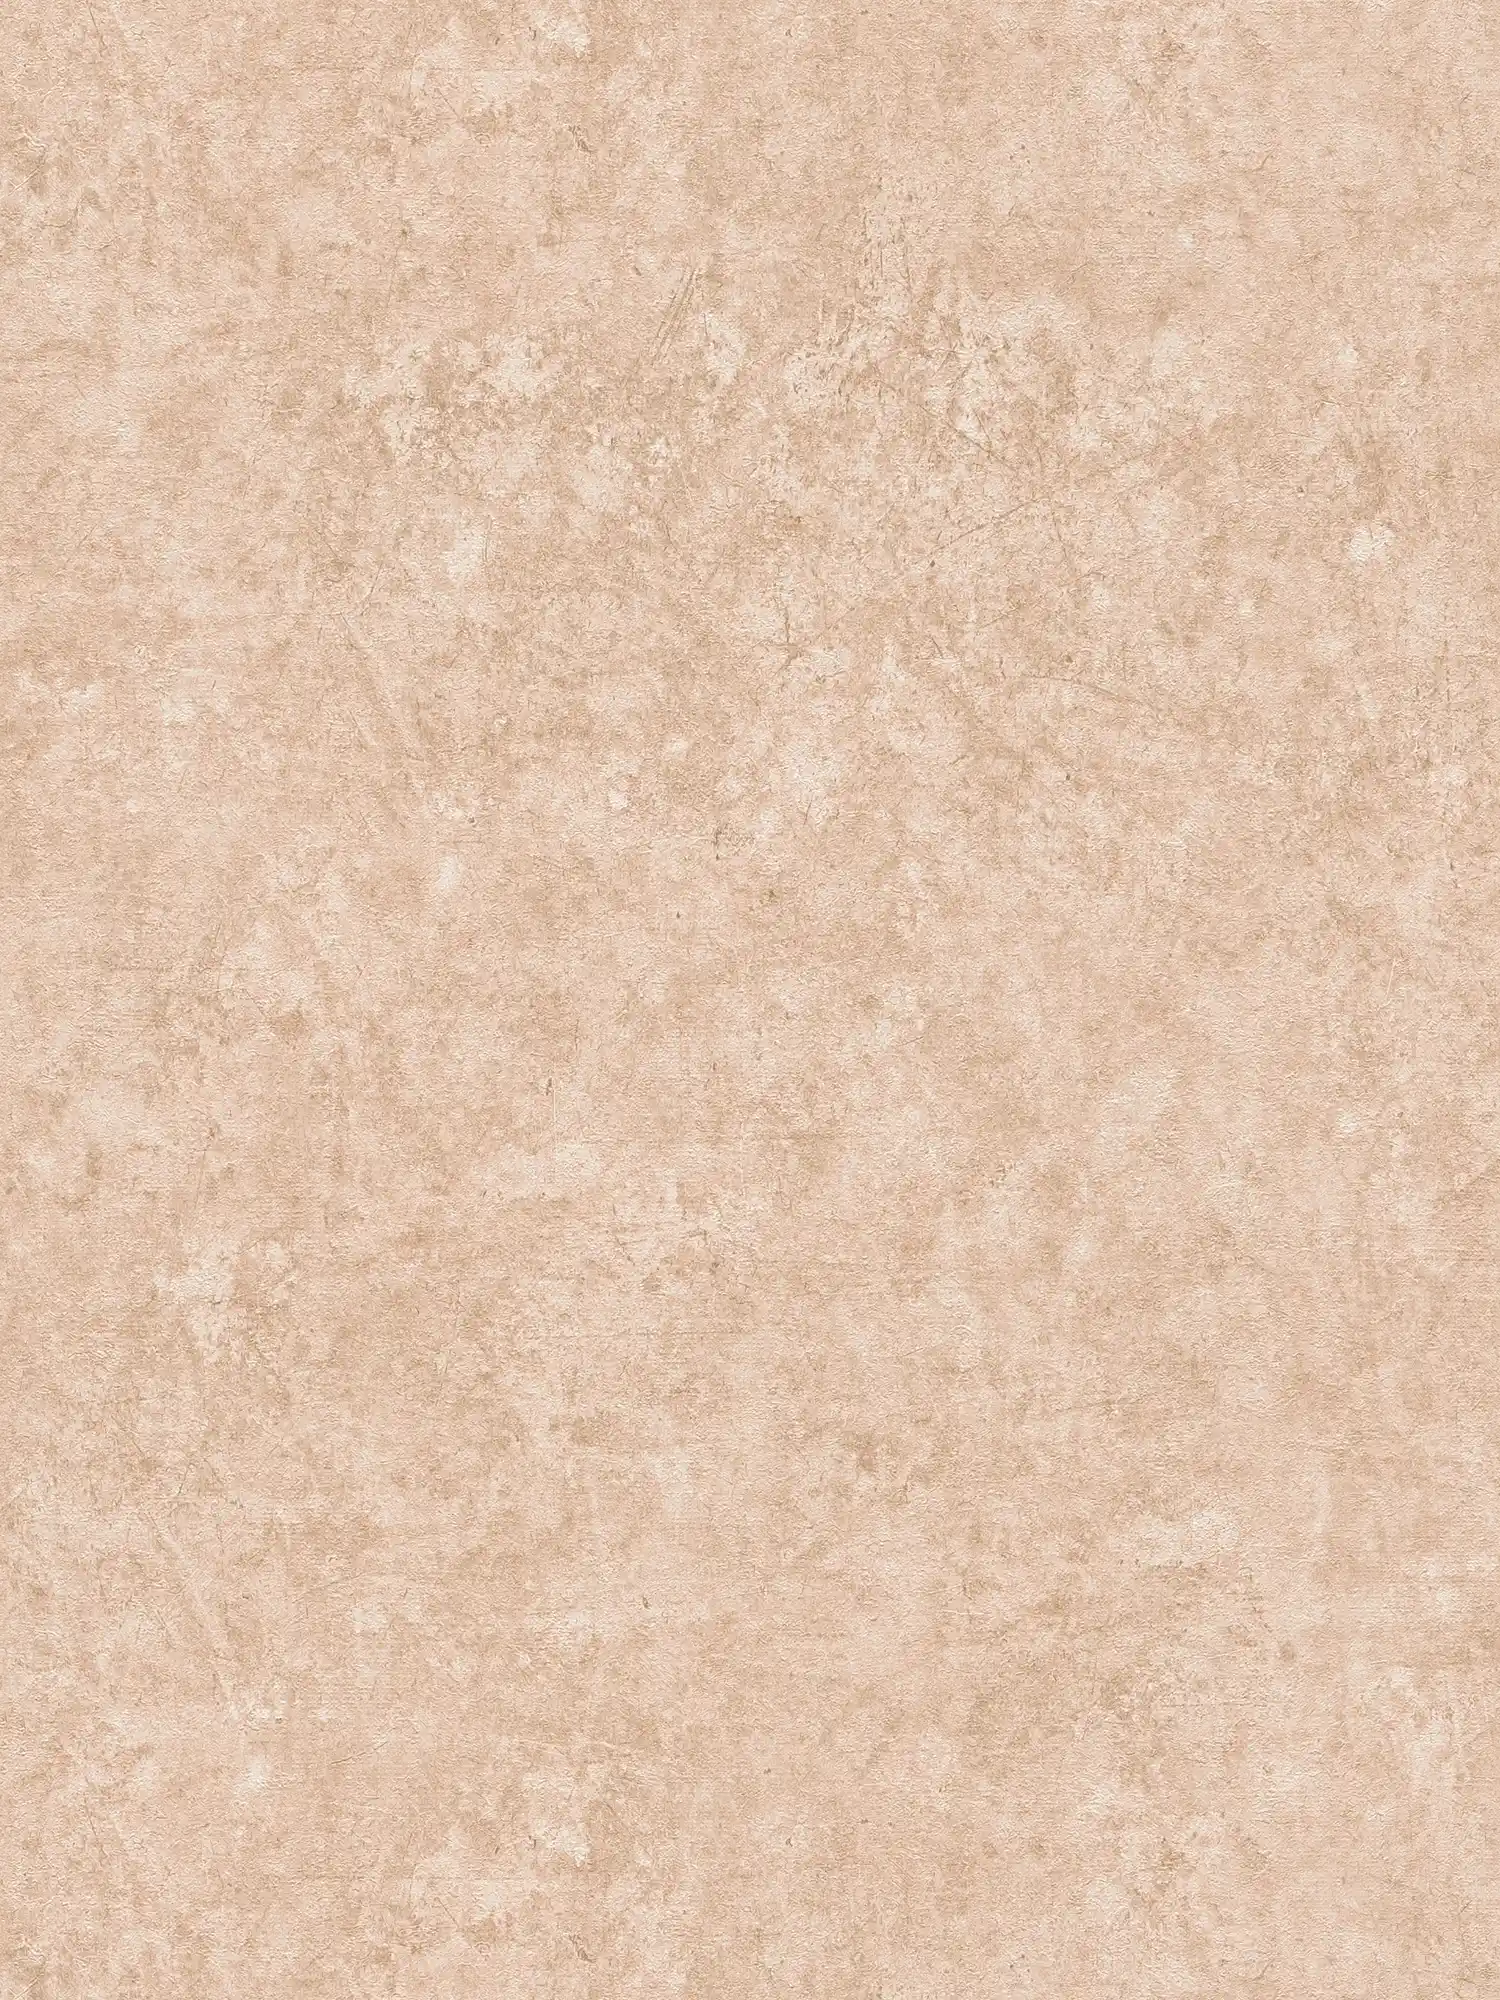 Papier peint intissé uni à motifs structurés - marron clair, beige
